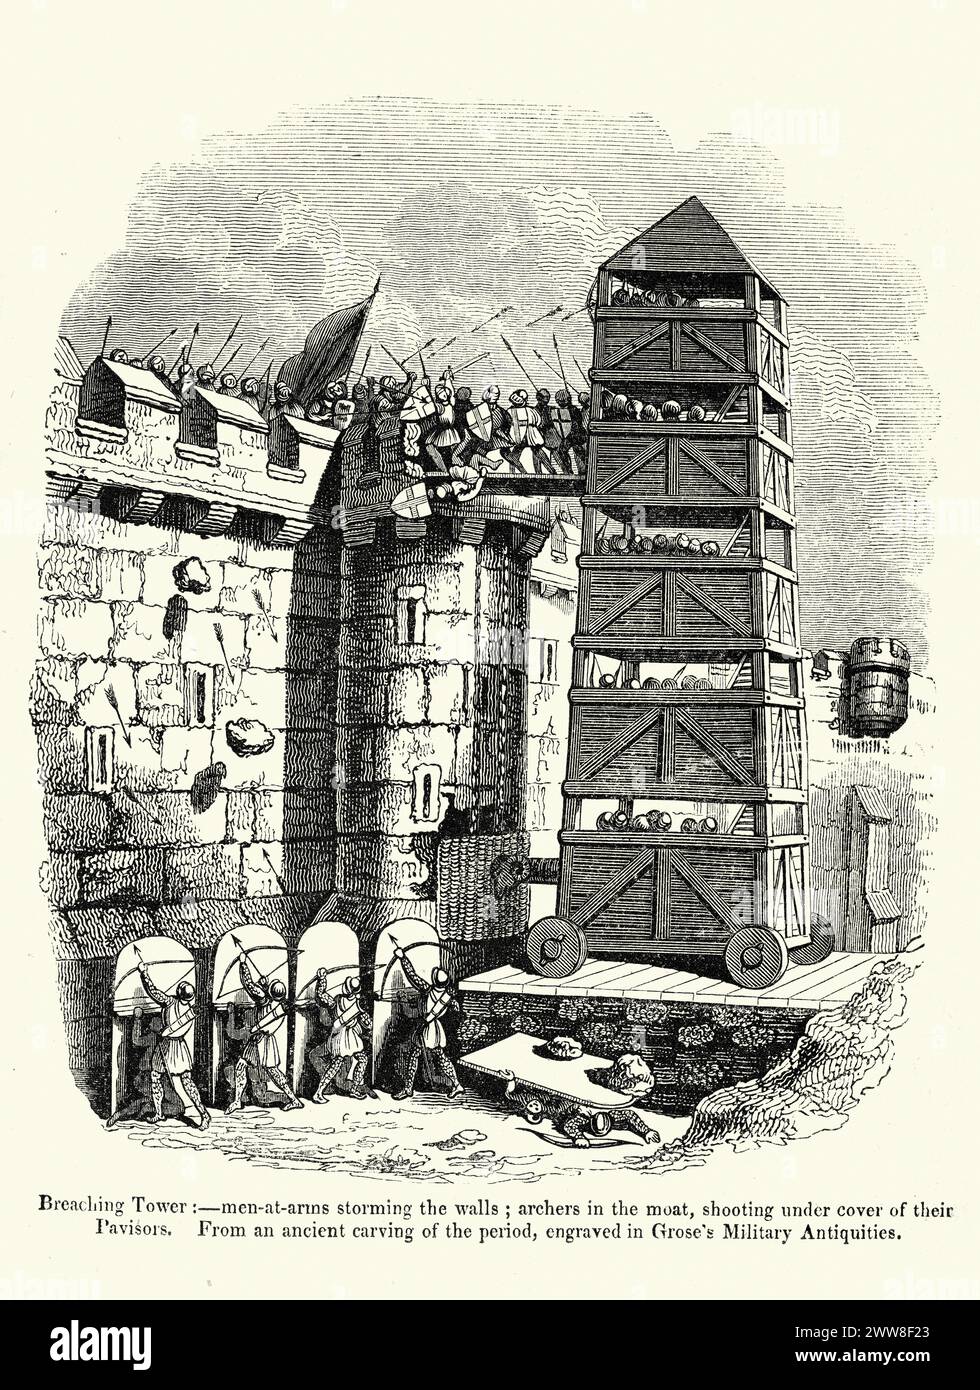 Alte Illustration mittelalterlicher Belagerungskämpfe, bewaffnete Männer stürmen Mauern vom Belagerungsturm, Bogenschützen mit Pflasterschilden Stockfoto